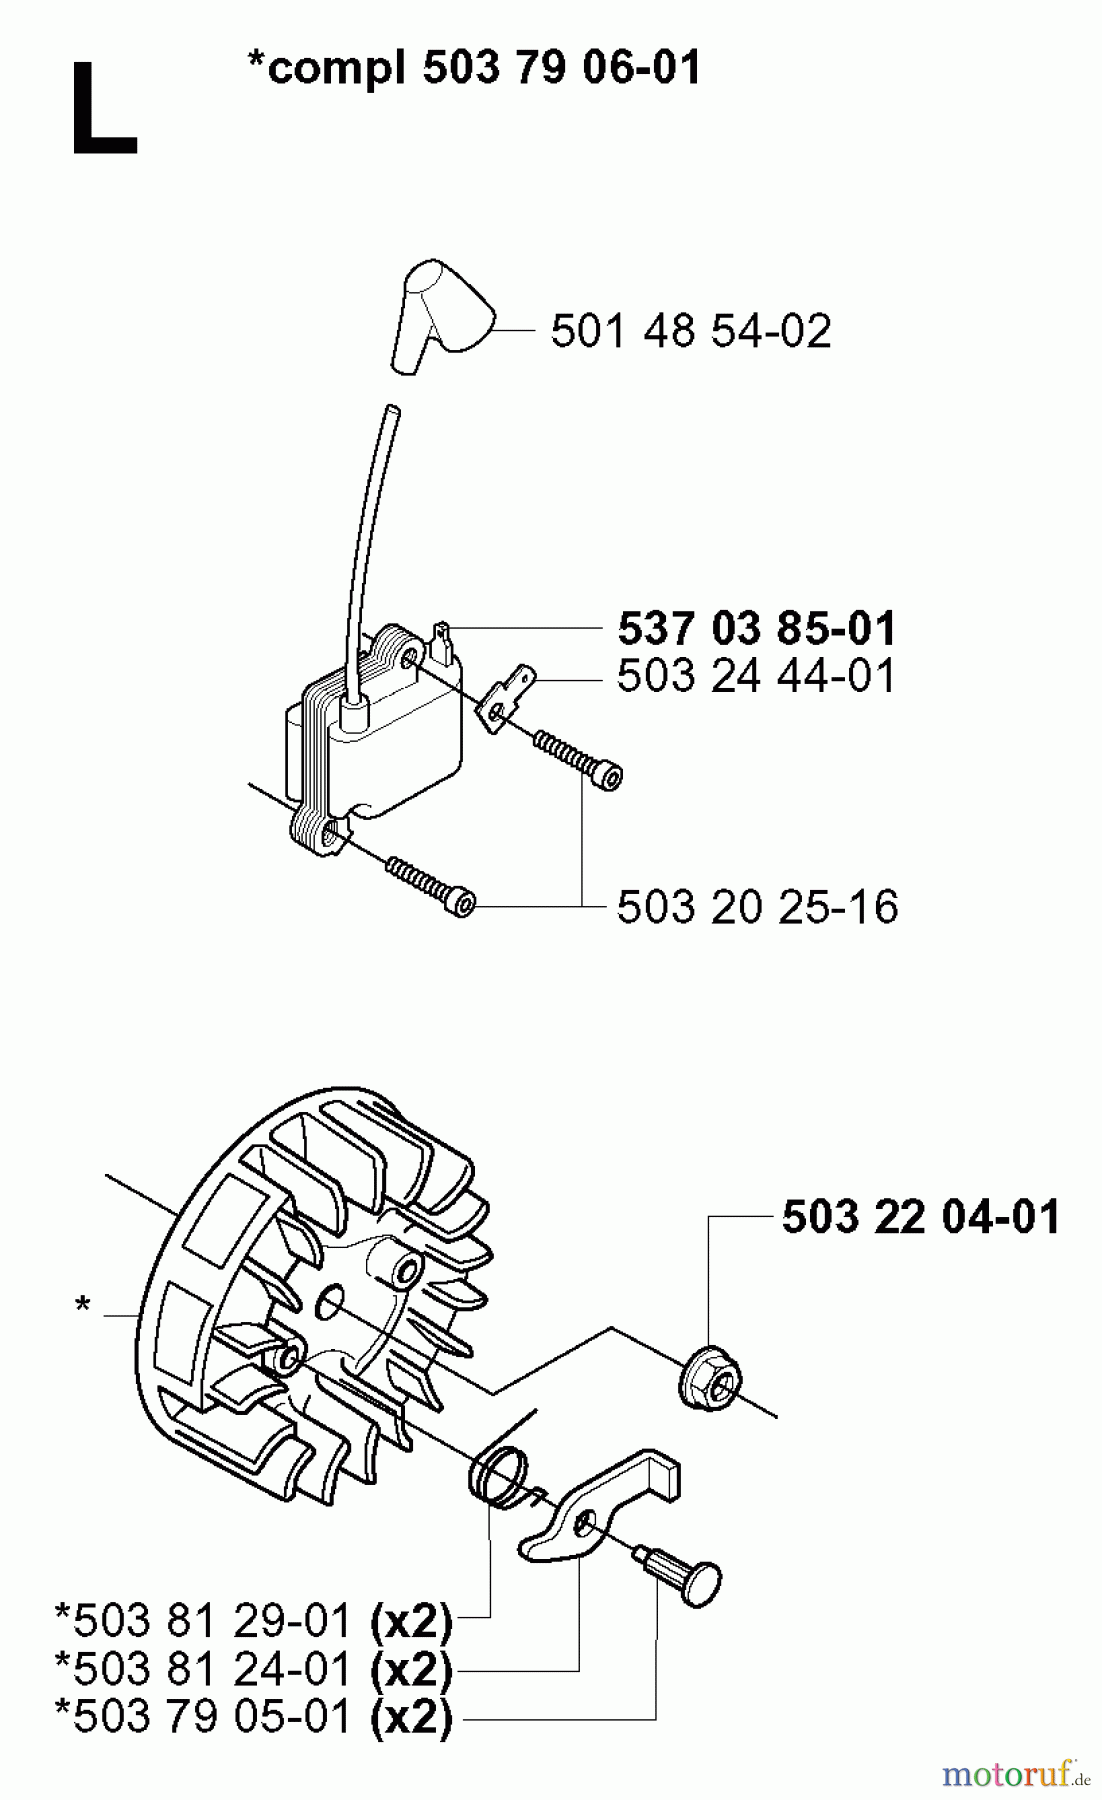  Jonsered Motorsensen, Trimmer GR2026 - Jonsered String/Brush Trimmer (2000-10) IGNITION SYSTEM